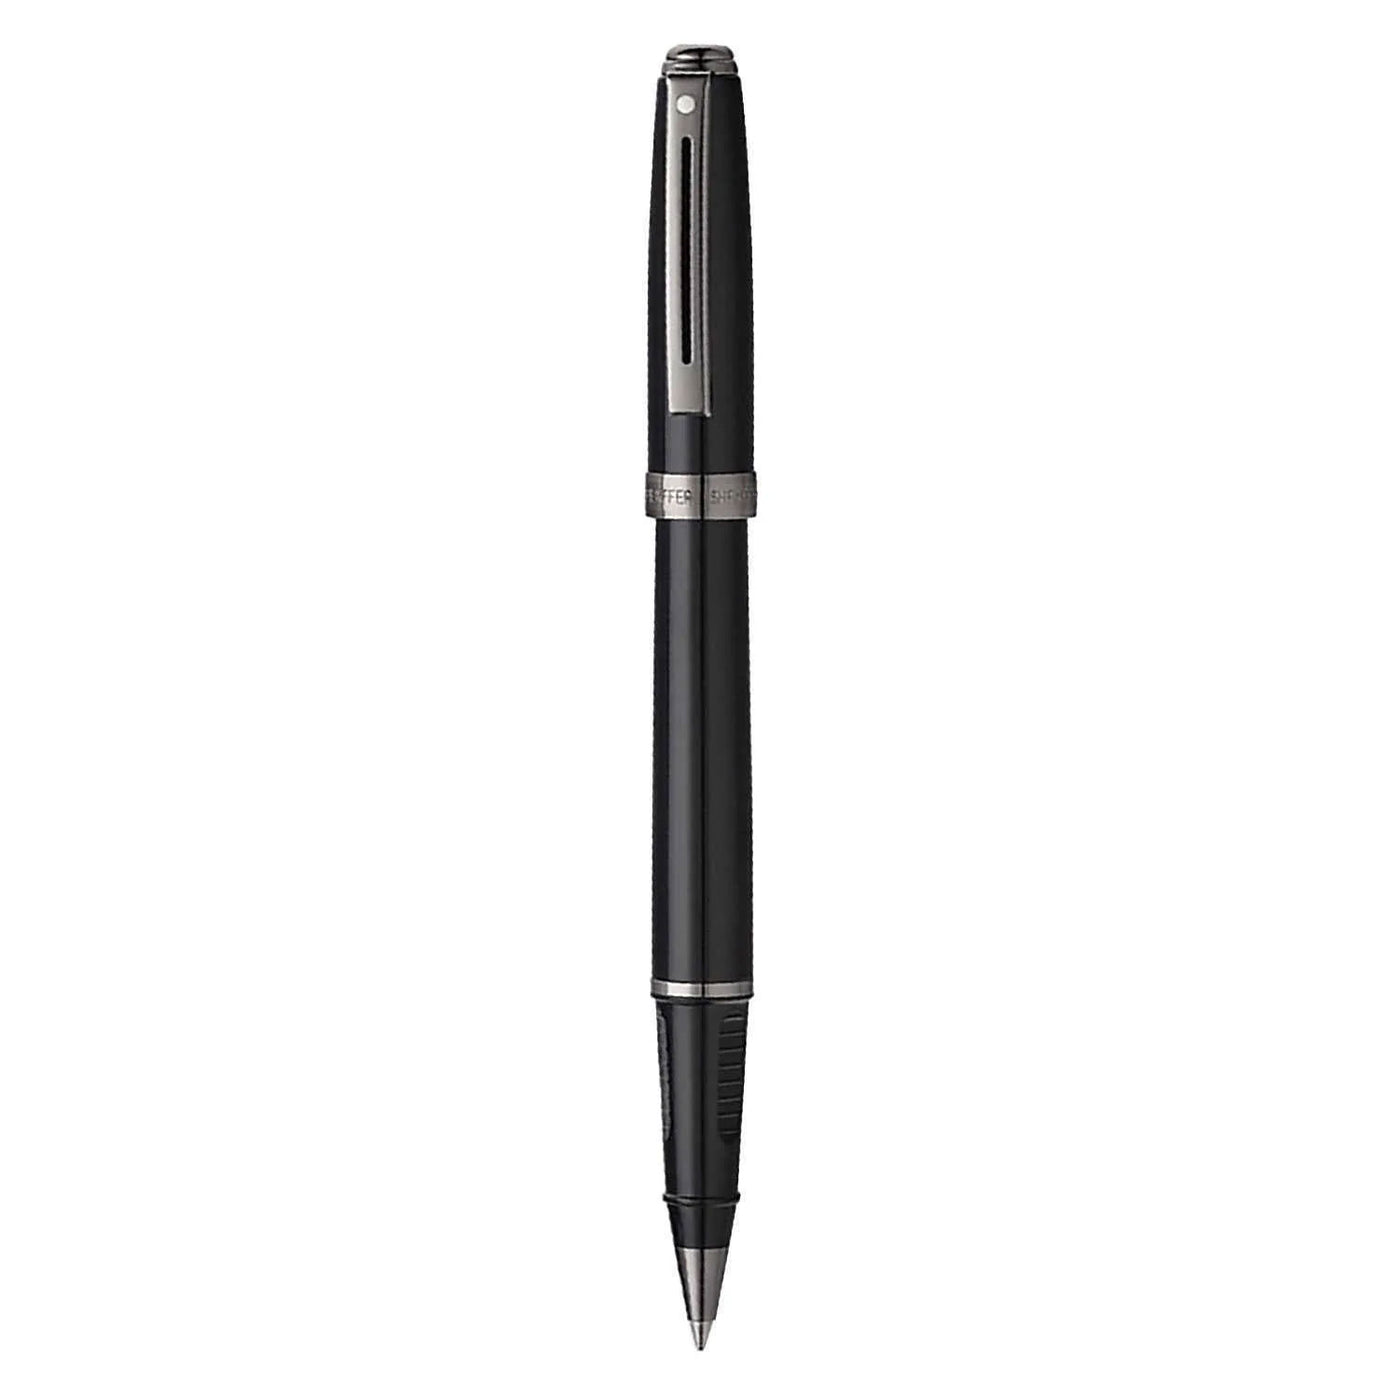 Sheaffer Prelude Roller Ball Pen - Glossy Black PVD 2